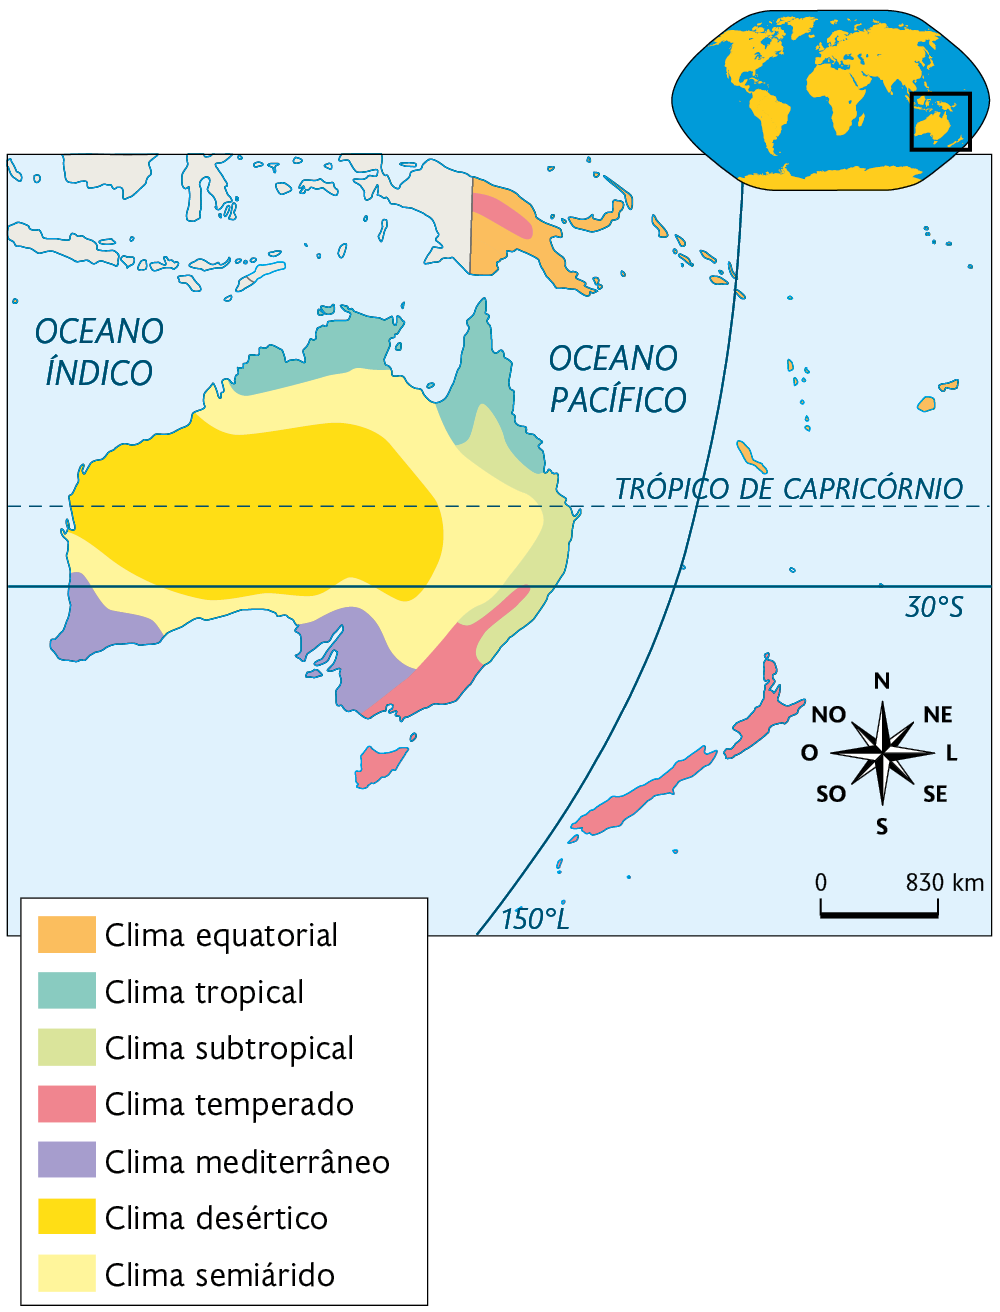 Mapa. Clima da Oceania. Clima equatorial: Papua Nova Guiné. Clima tropical: norte da Austrália. Clima subtropical: costa nordeste da Austrália. Clima temperado: porção sudeste da Austrália e Nova Zelândia. Clima mediterrâneo: áreas no sudoeste e sudeste da Austrália. Clima desértico: área centro-oeste da Austrália. Clima semiárido: faixa ao norte, leste e sul da Austrália. No canto superior direito, planisfério destacando a região descrita. No canto inferior direito, a rosa dos ventos e a escala: 830 quilômetros por centímetro.